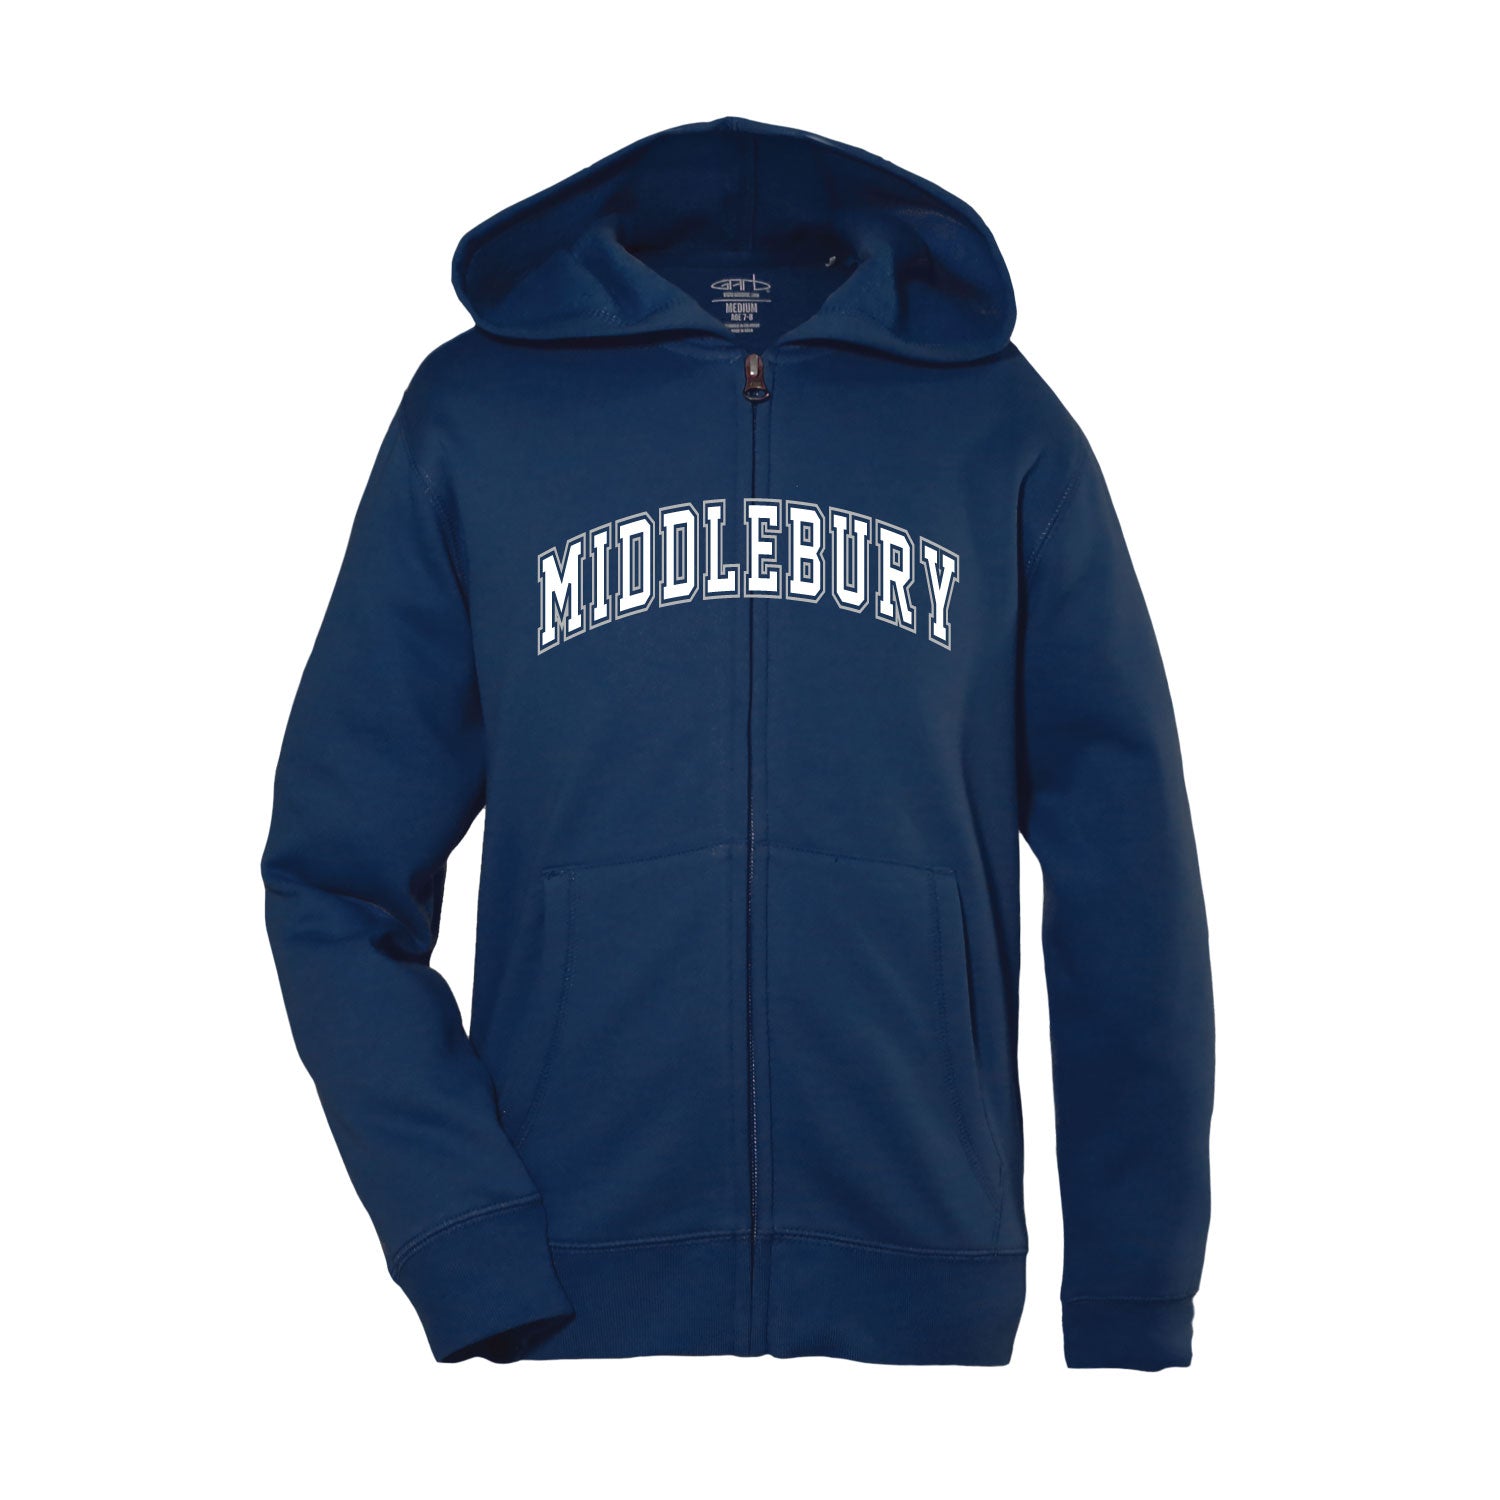 Middlebury Zip Hooded Sweatshirt (Youth)